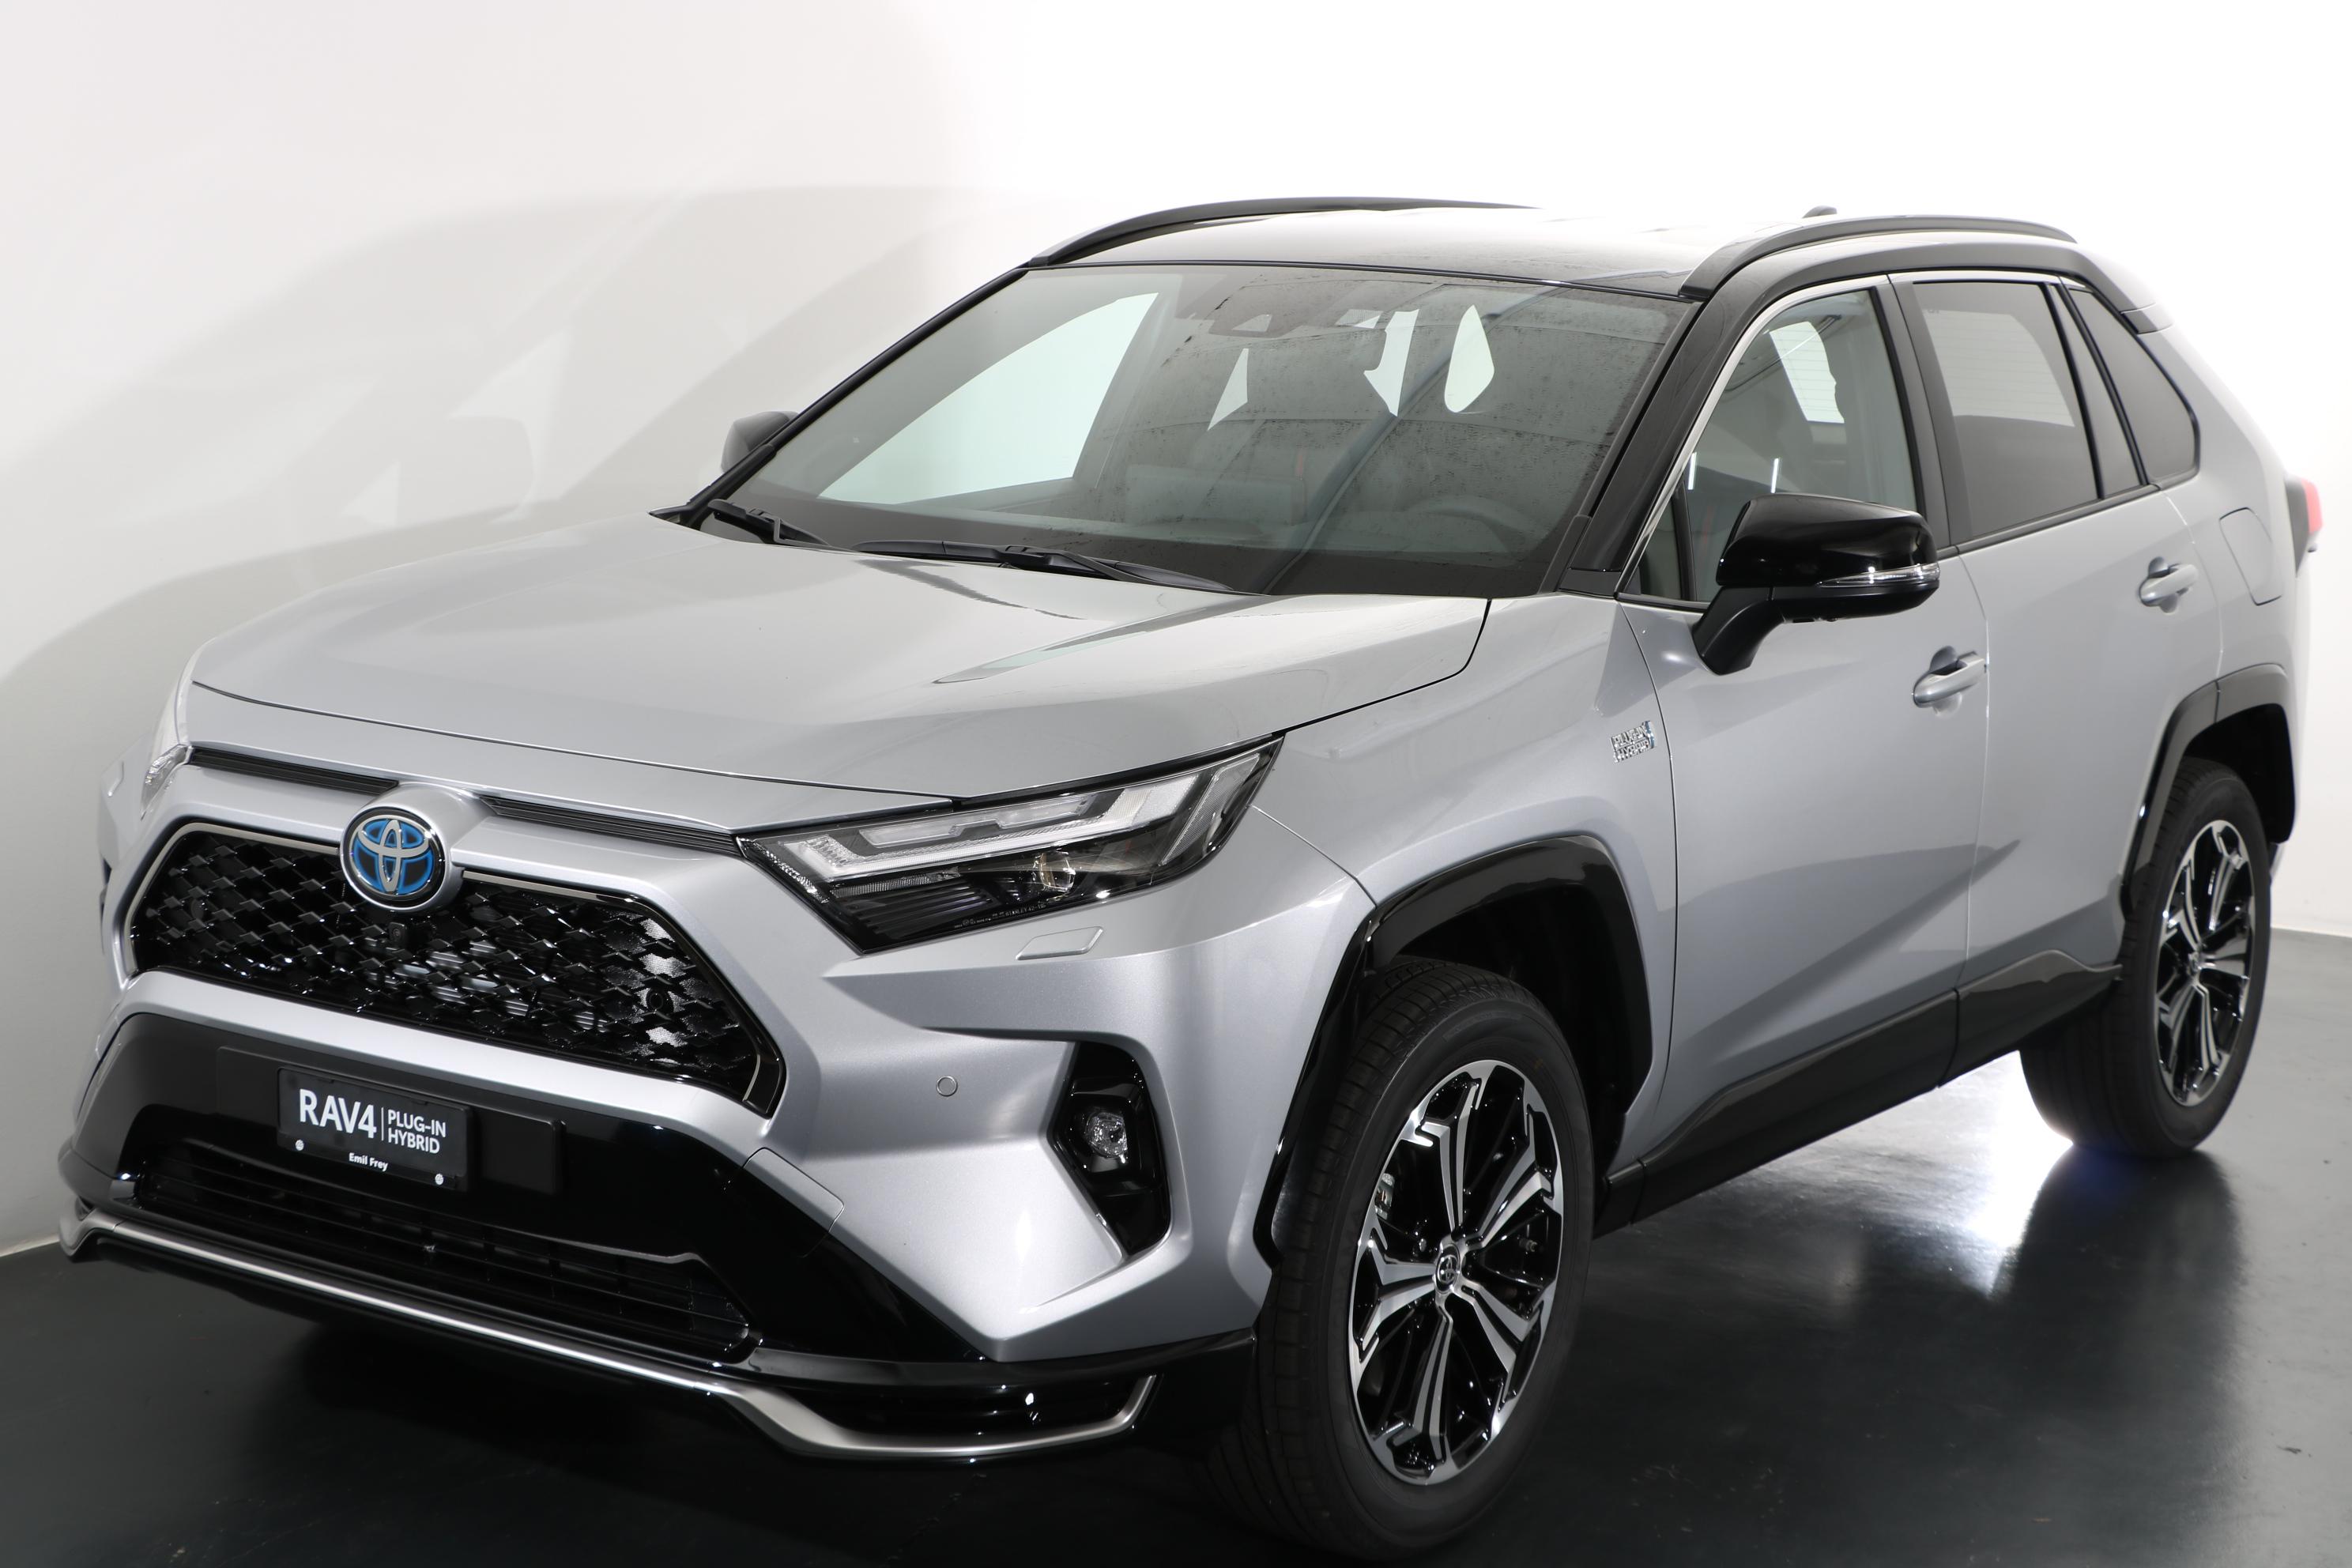 Toyota RAV4 hybride : découvrez la capacité de son réservoir d